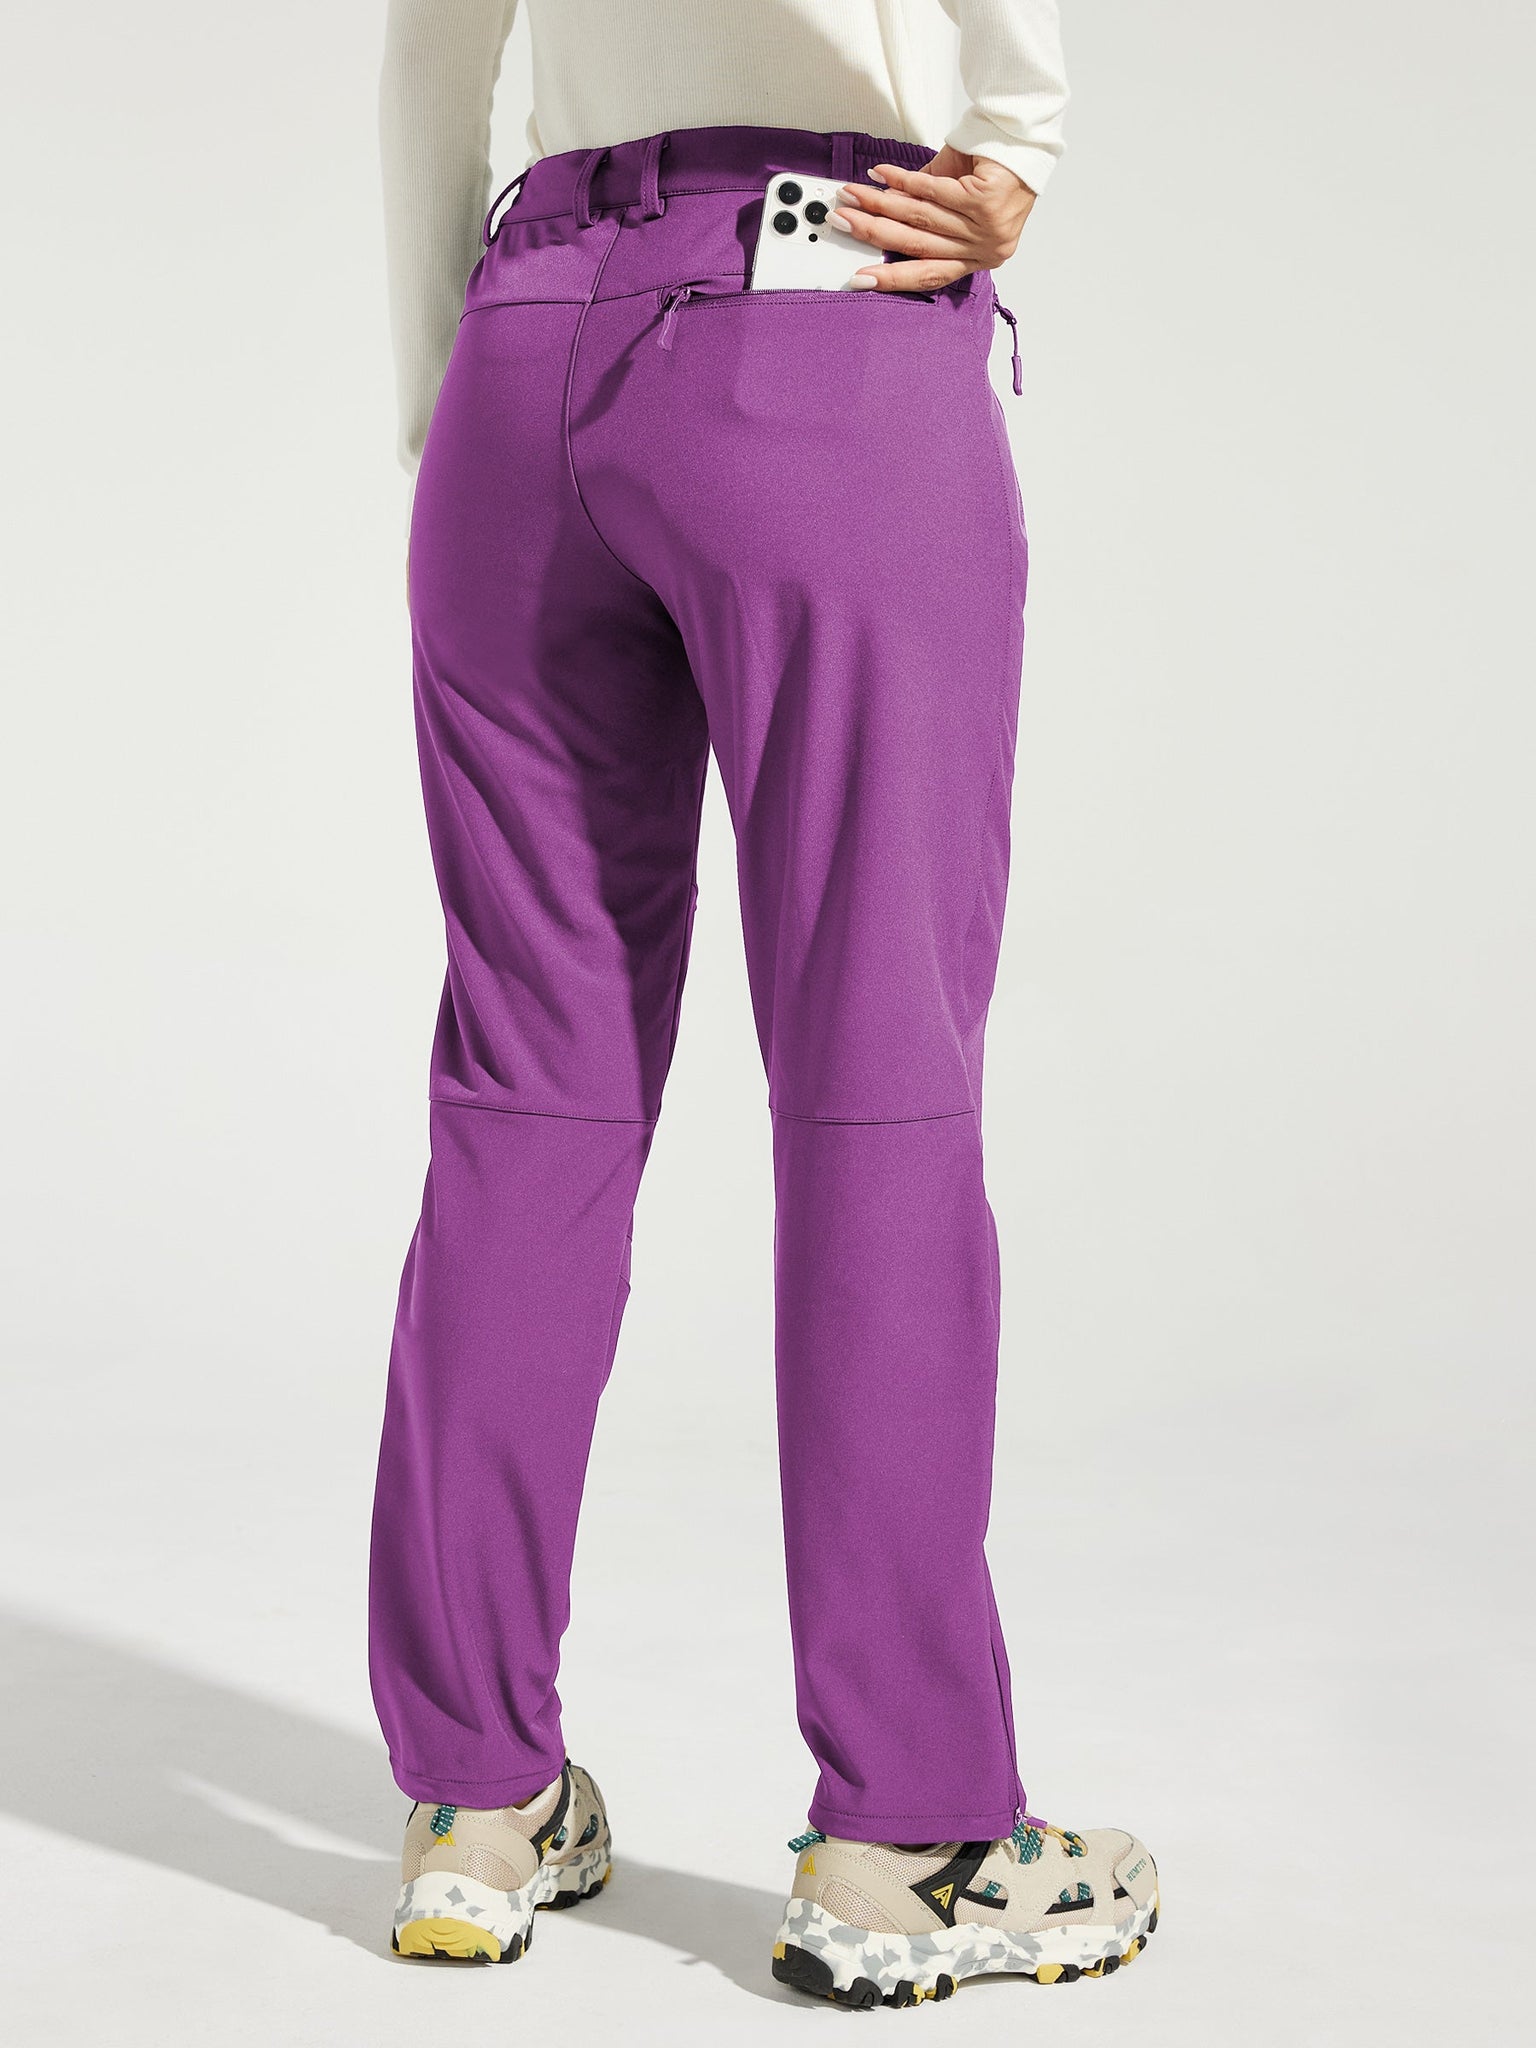 Women's Fleece Lined Snow Cargo Pants_Purple_model2